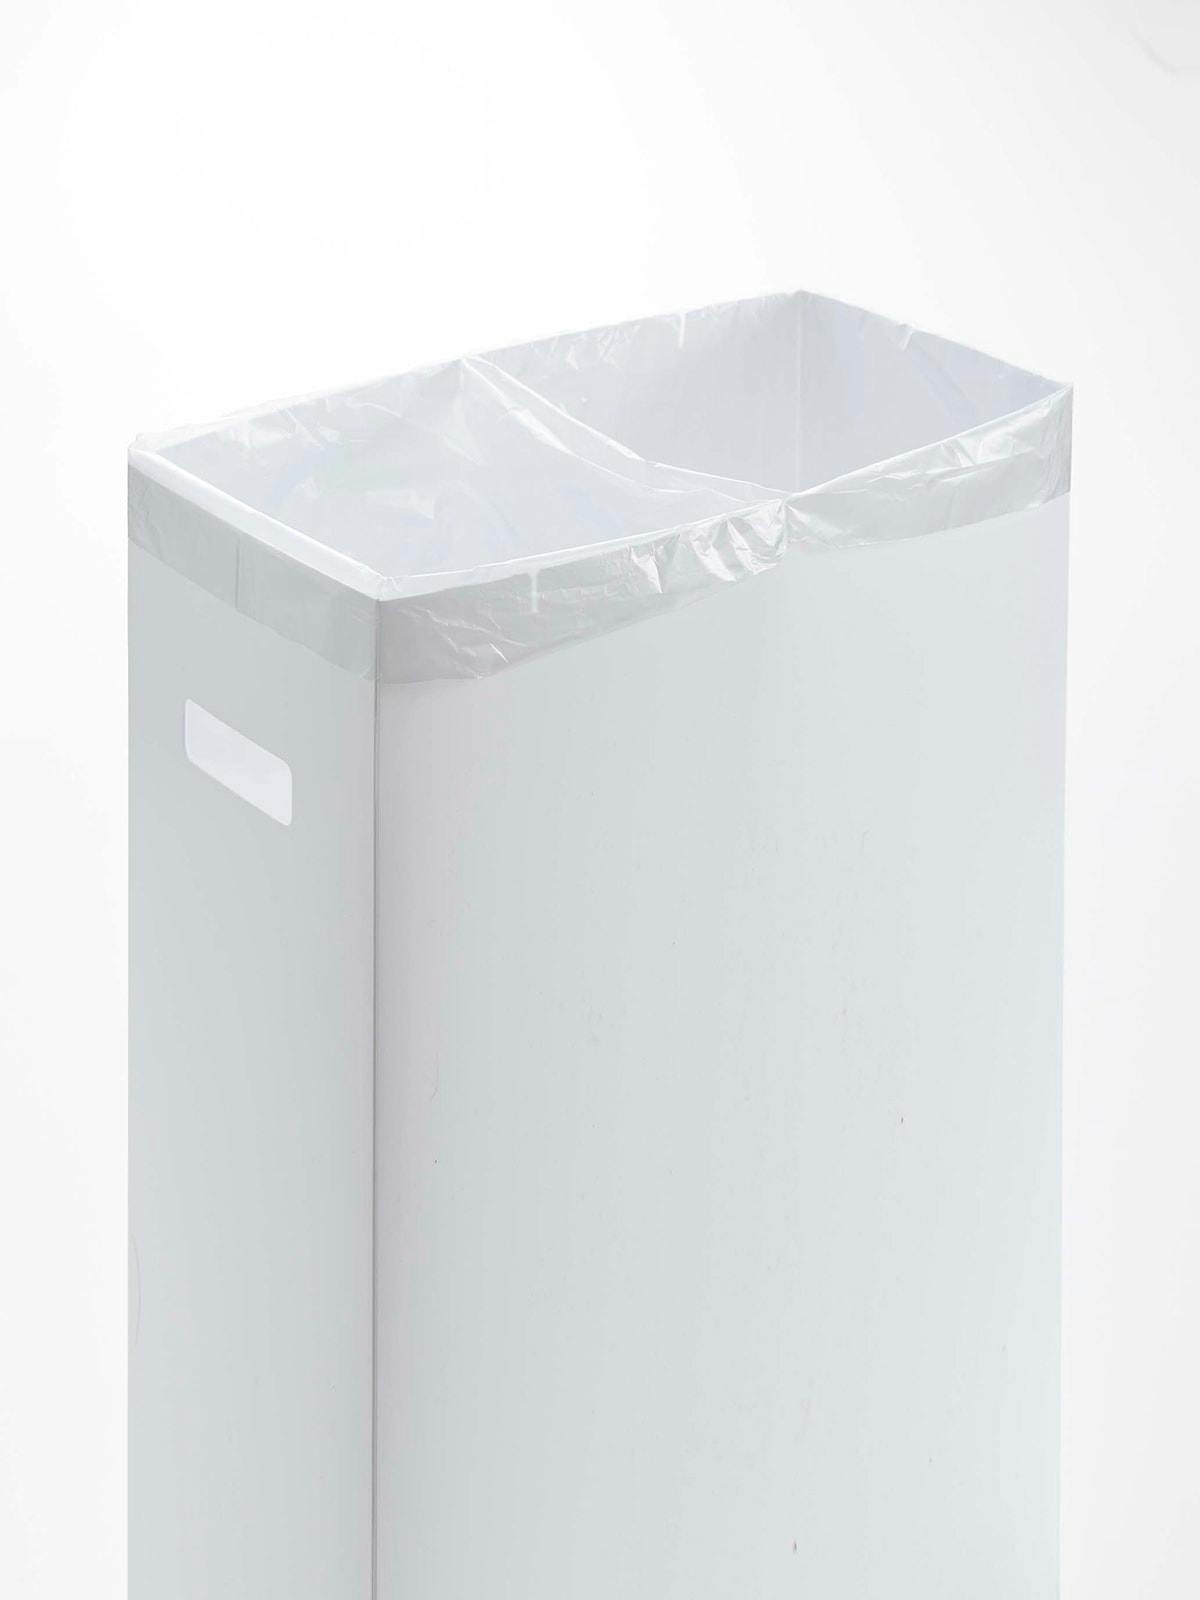 スリム蓋付きゴミ箱 タワーのイメージ